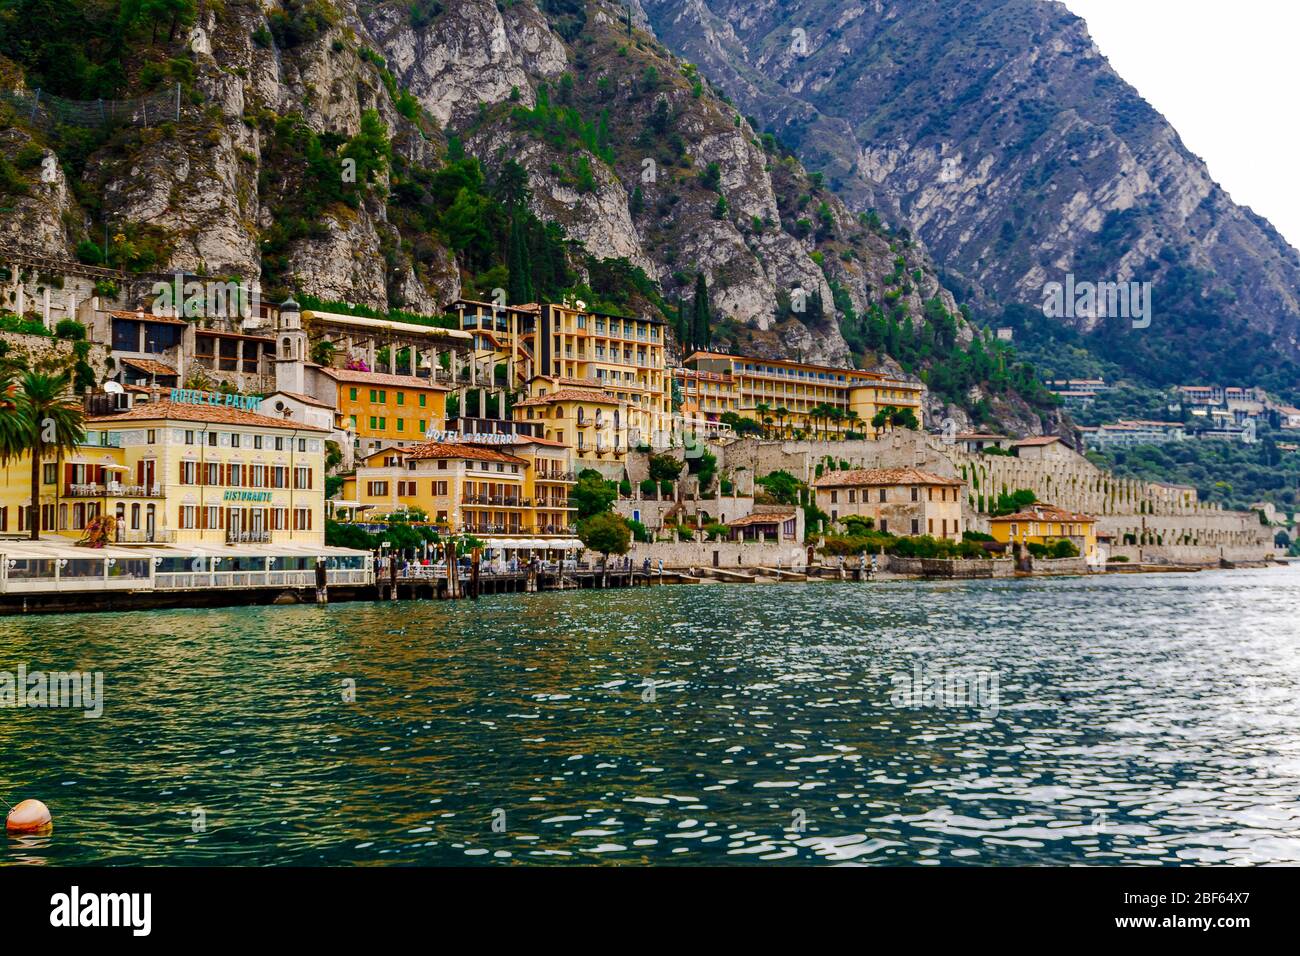 Limone sul Garda, Brescia / Italia - 24 settembre 2017: Case colorate e alberghi sulla riva del lago sullo sfondo delle montagne. Foto Stock